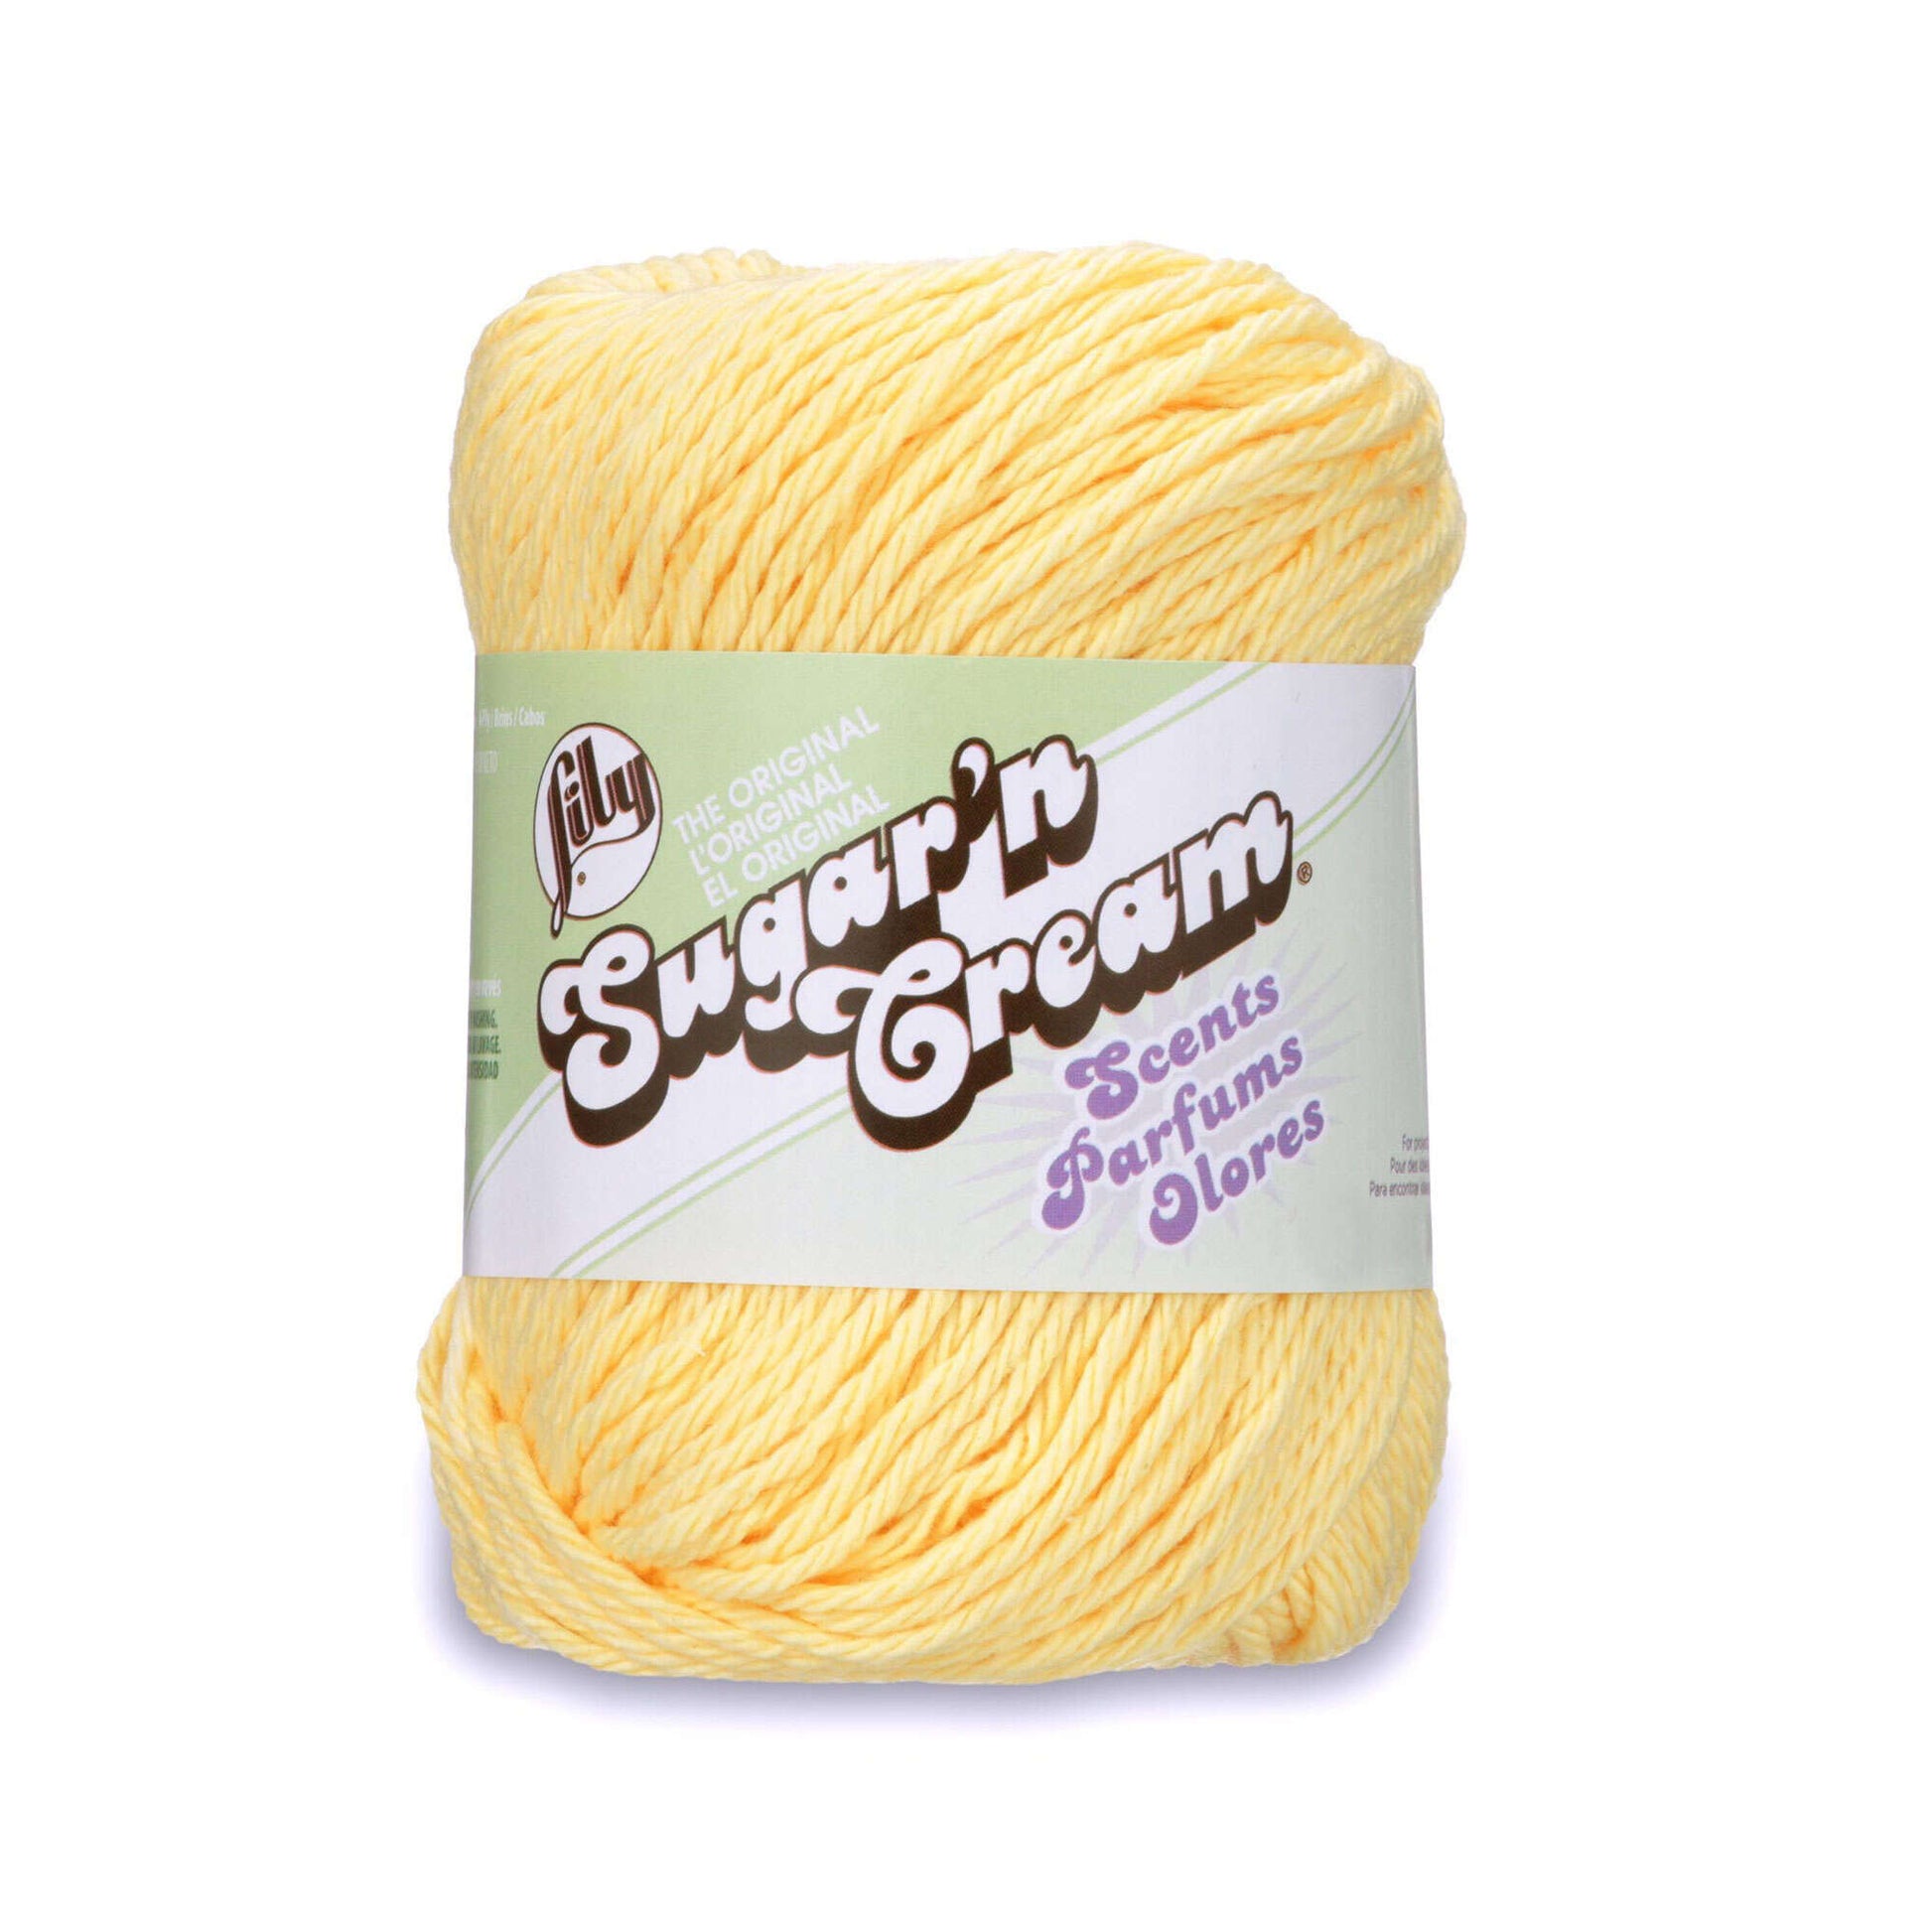 Lily Sugar'n Cream Scents Yarn - Discontinued Shades